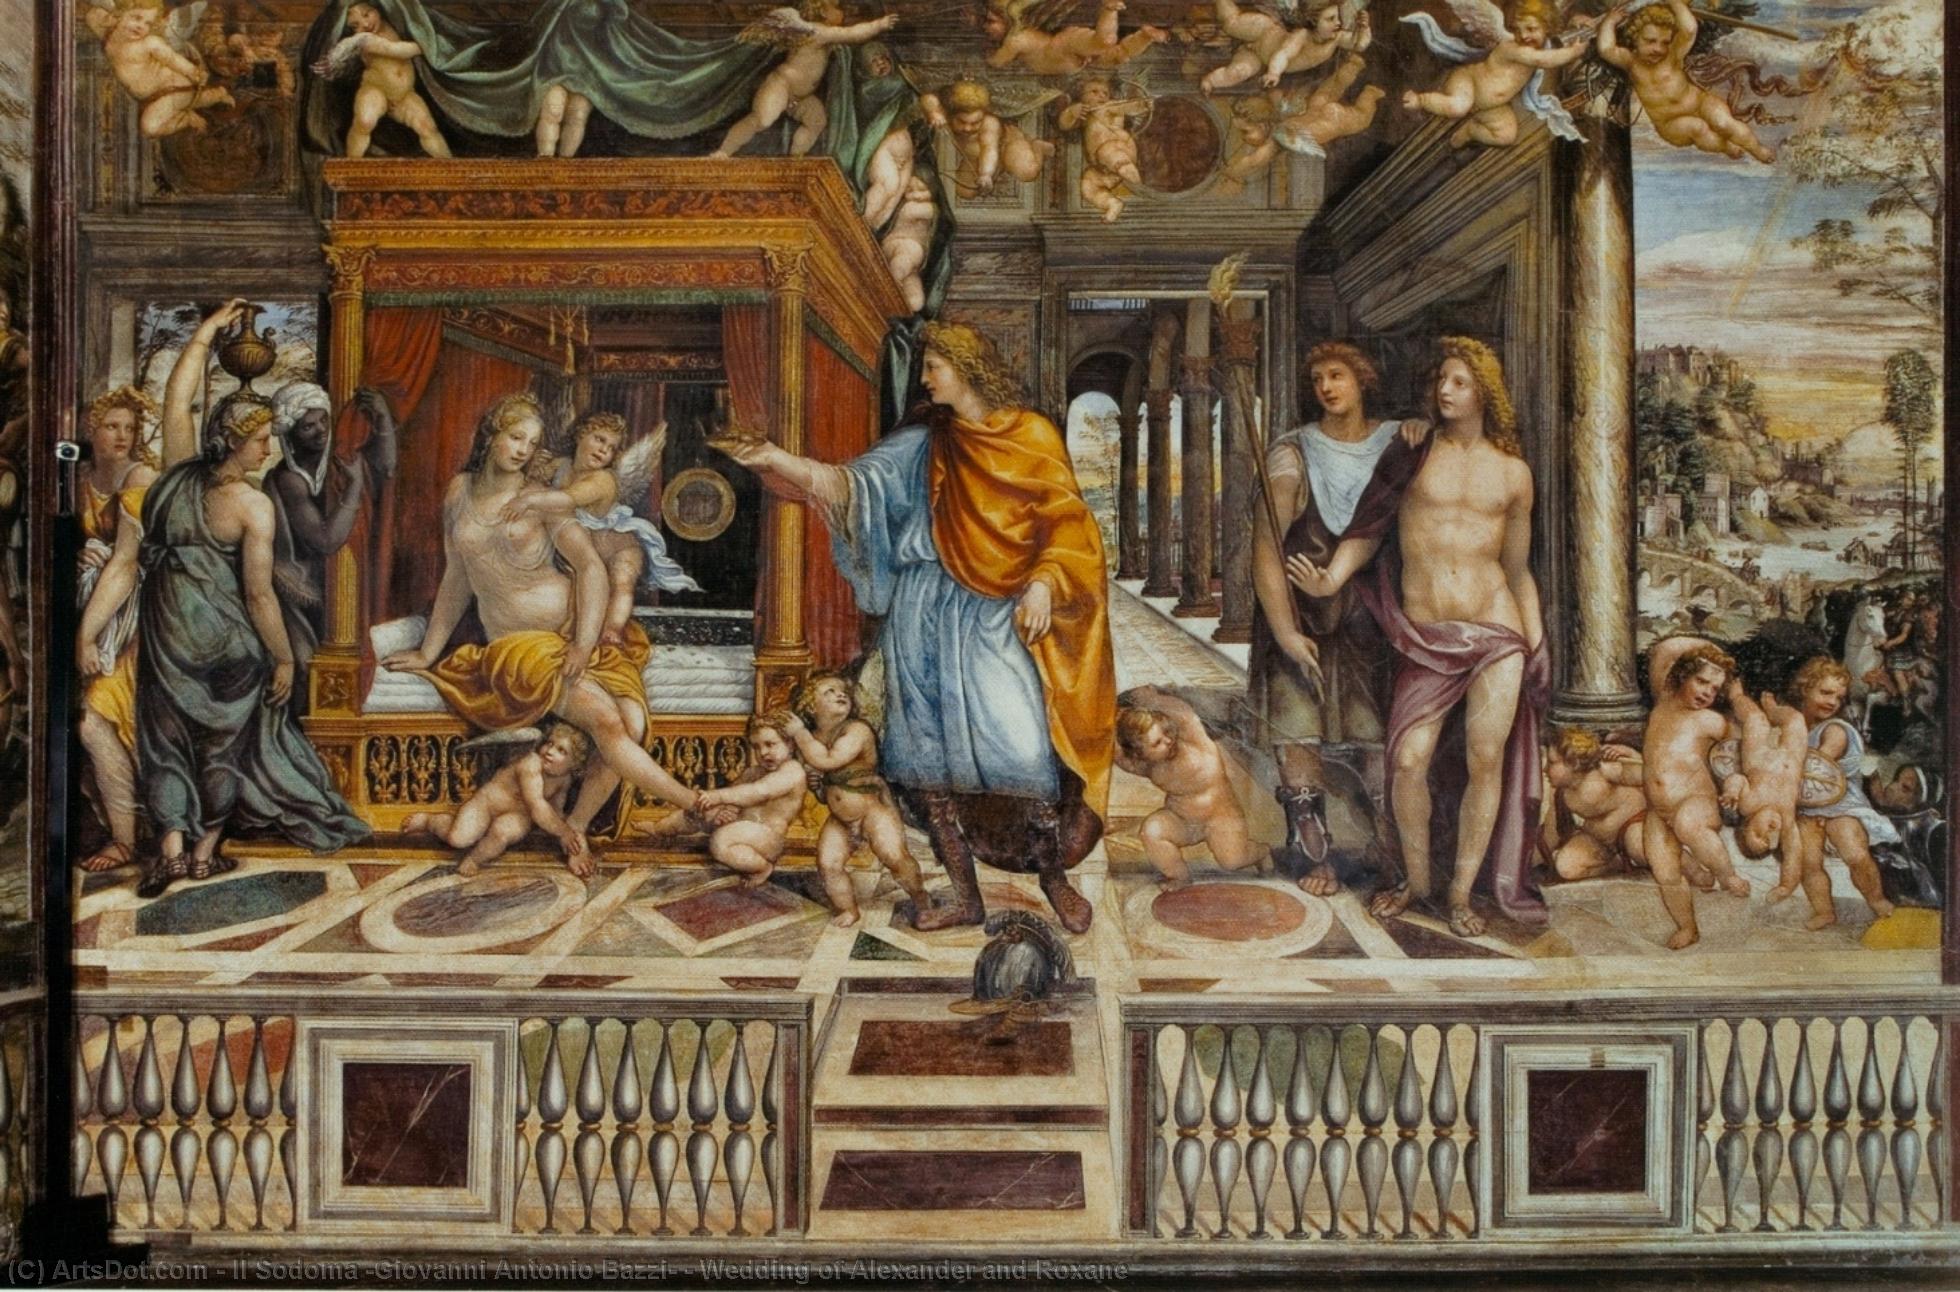 WikiOO.org - Enciklopedija likovnih umjetnosti - Slikarstvo, umjetnička djela Il Sodoma (Giovanni Antonio Bazzi) - Wedding of Alexander and Roxane